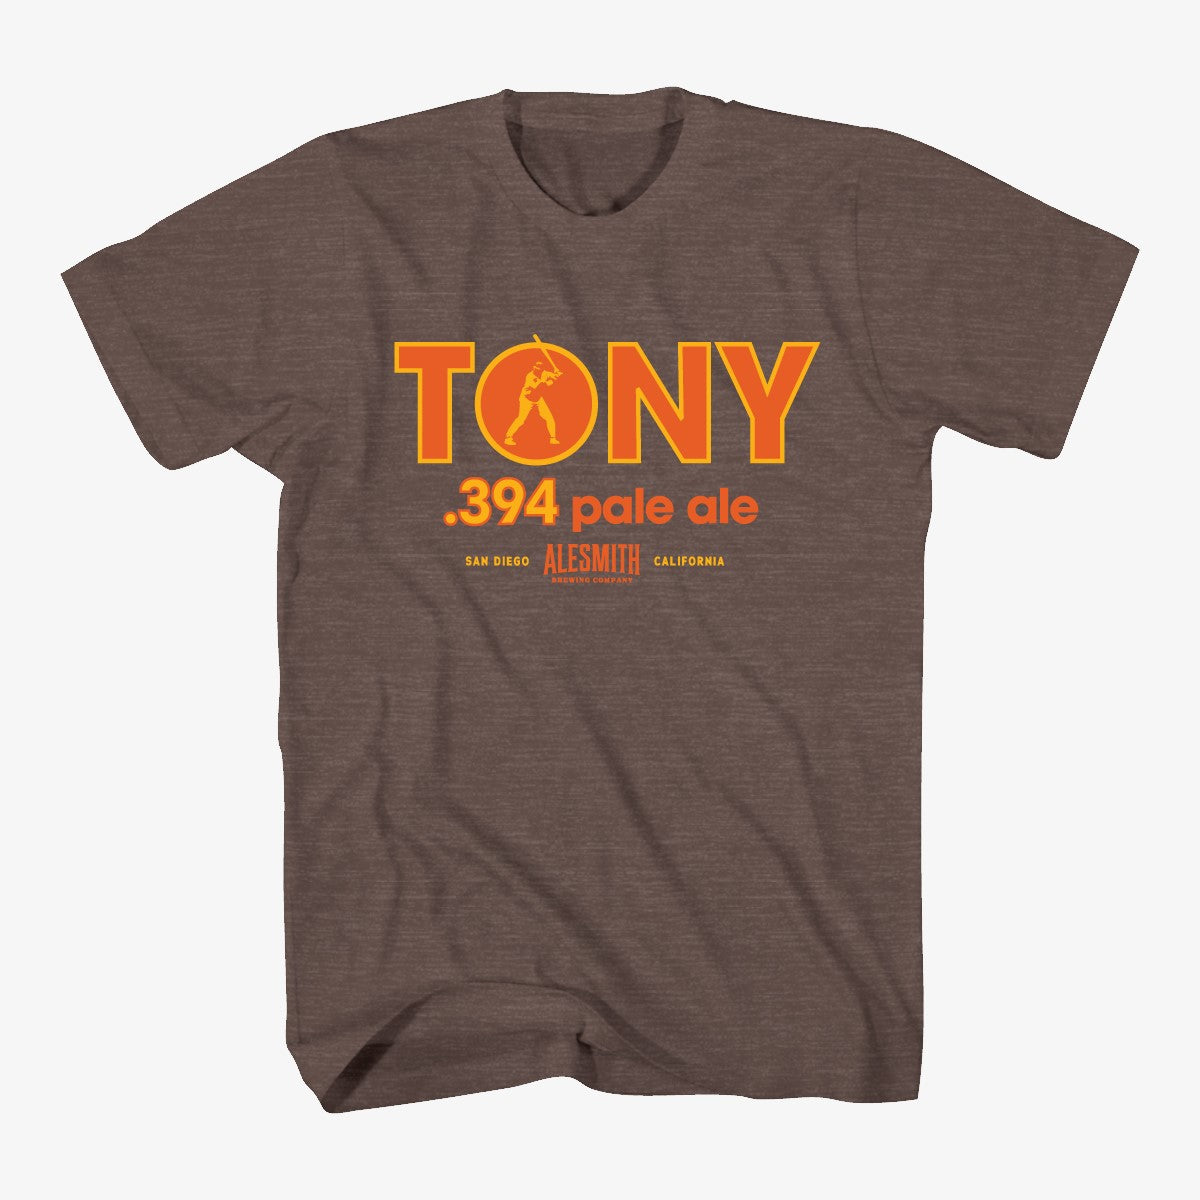 .394 "Tony" T-Shirt - AleSmith Brewing Co.